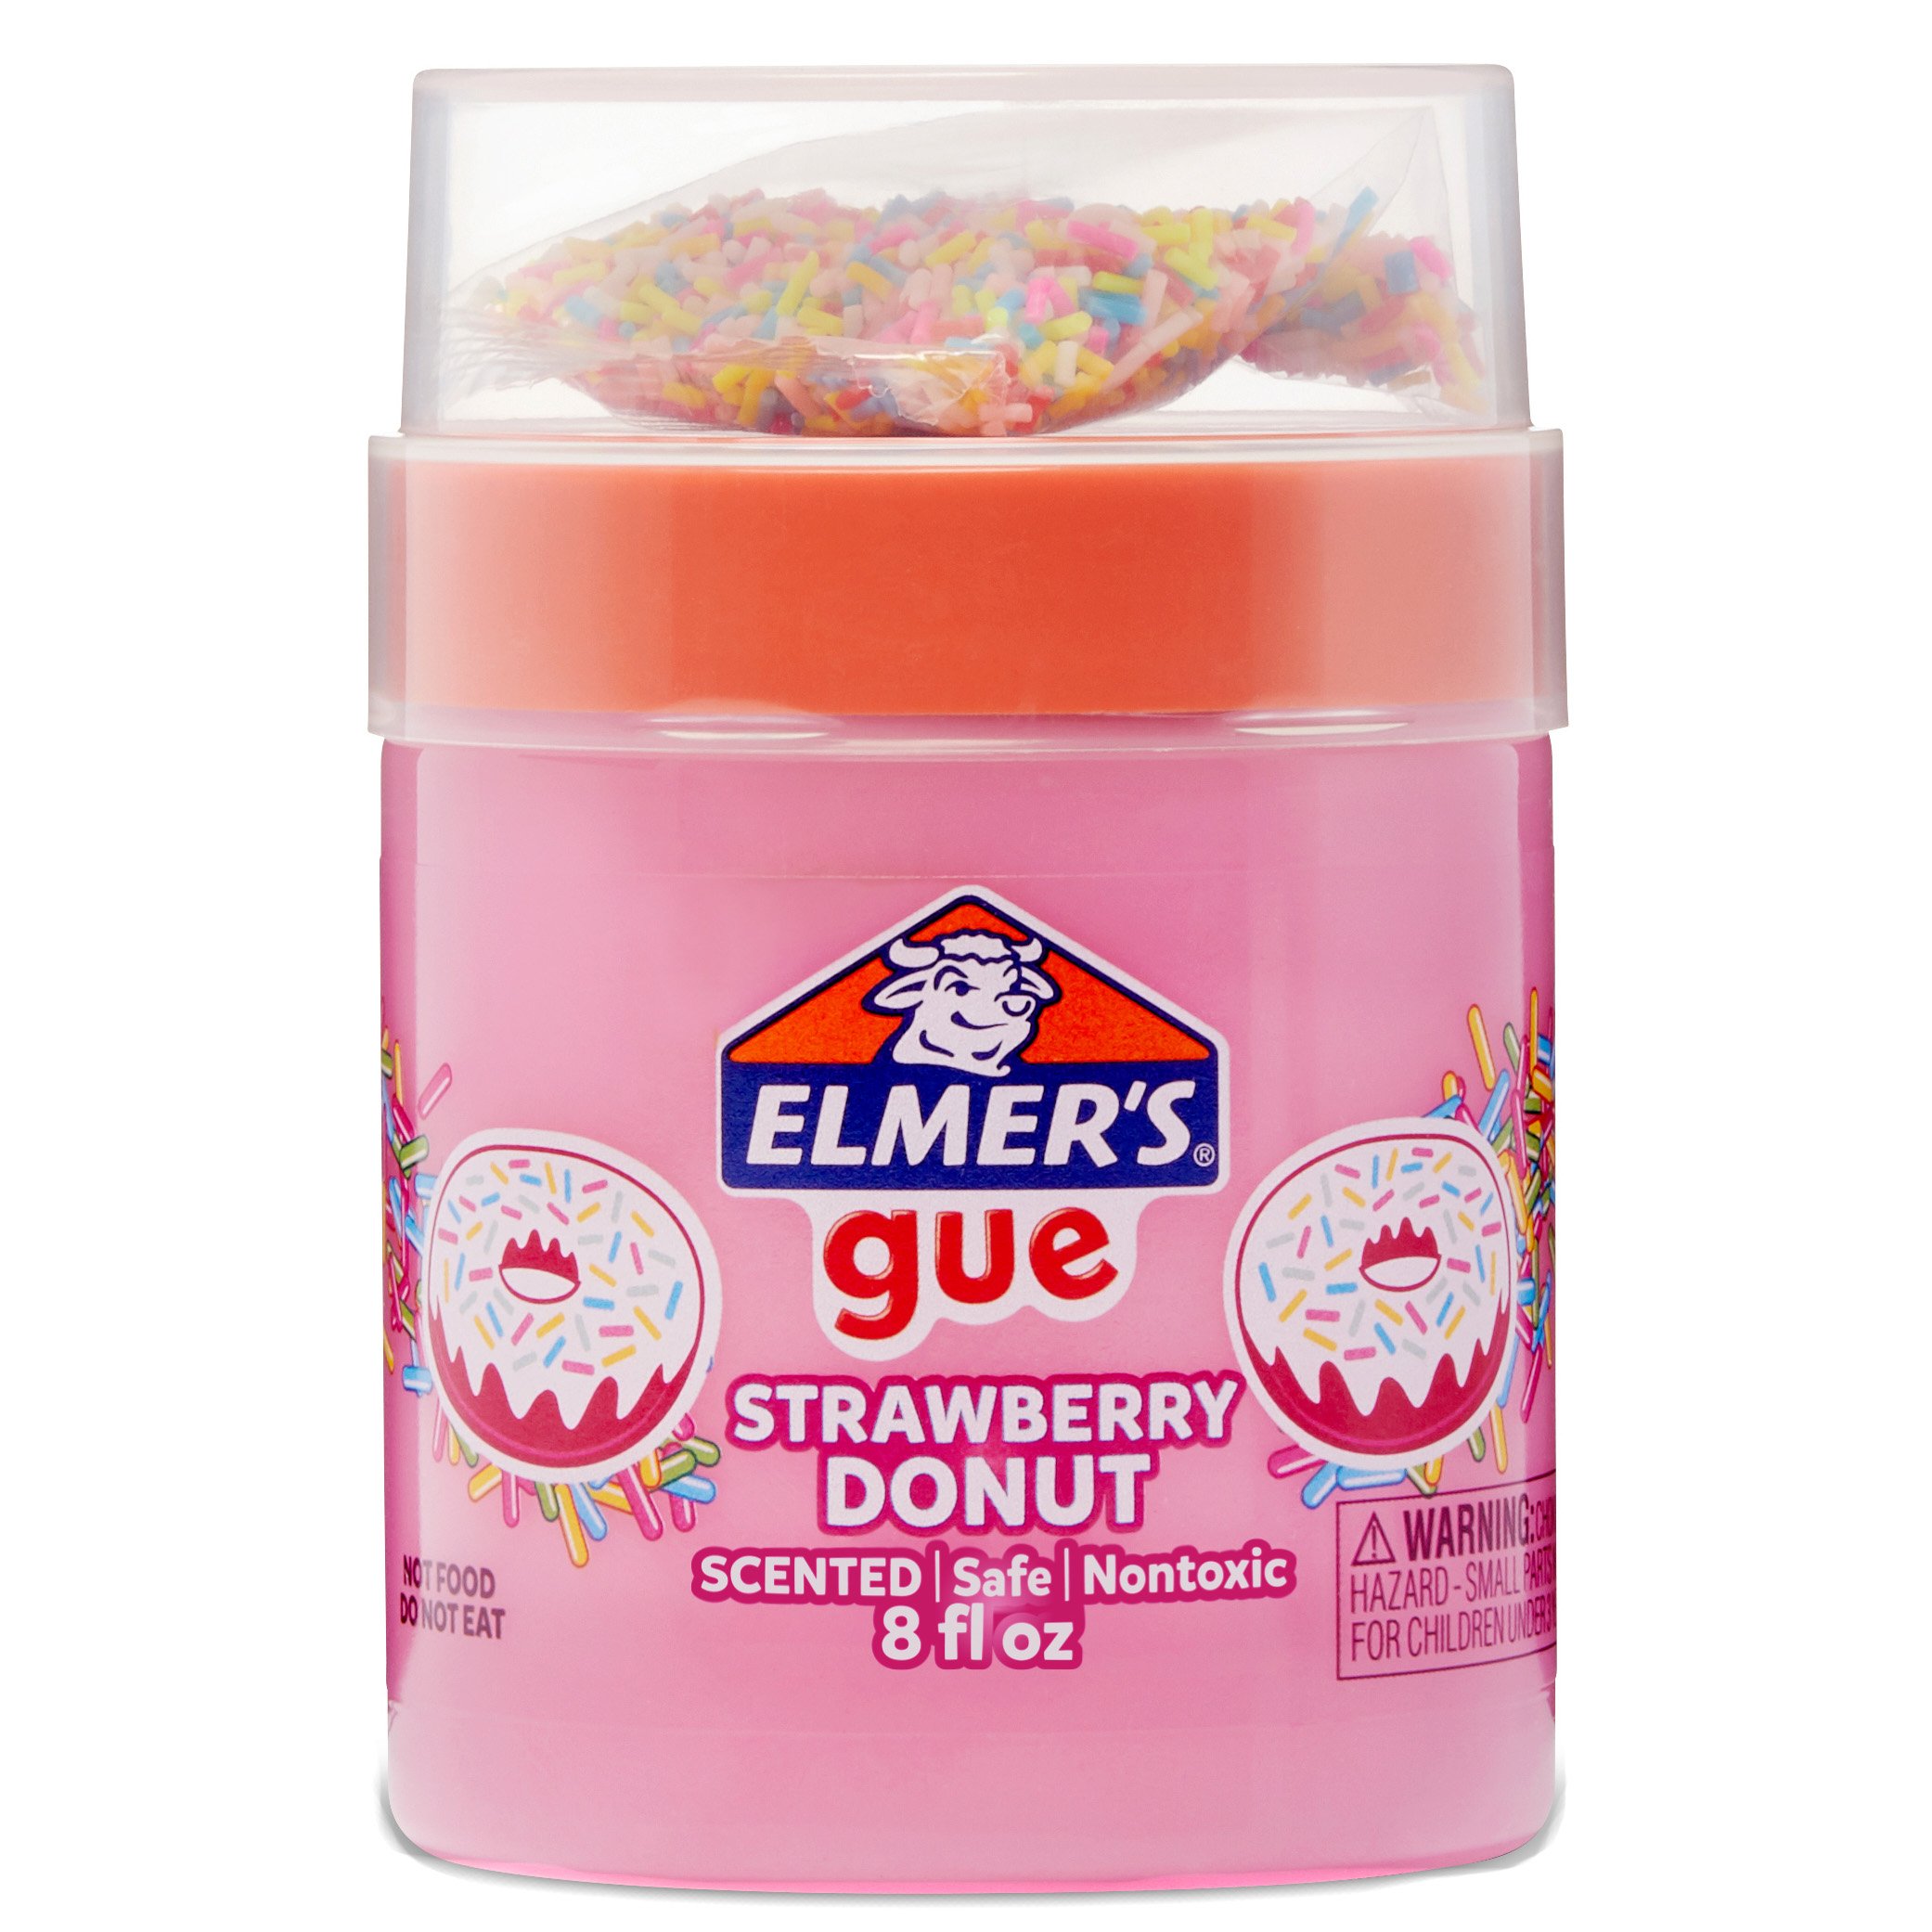 Elmer's Gue Candy Blast